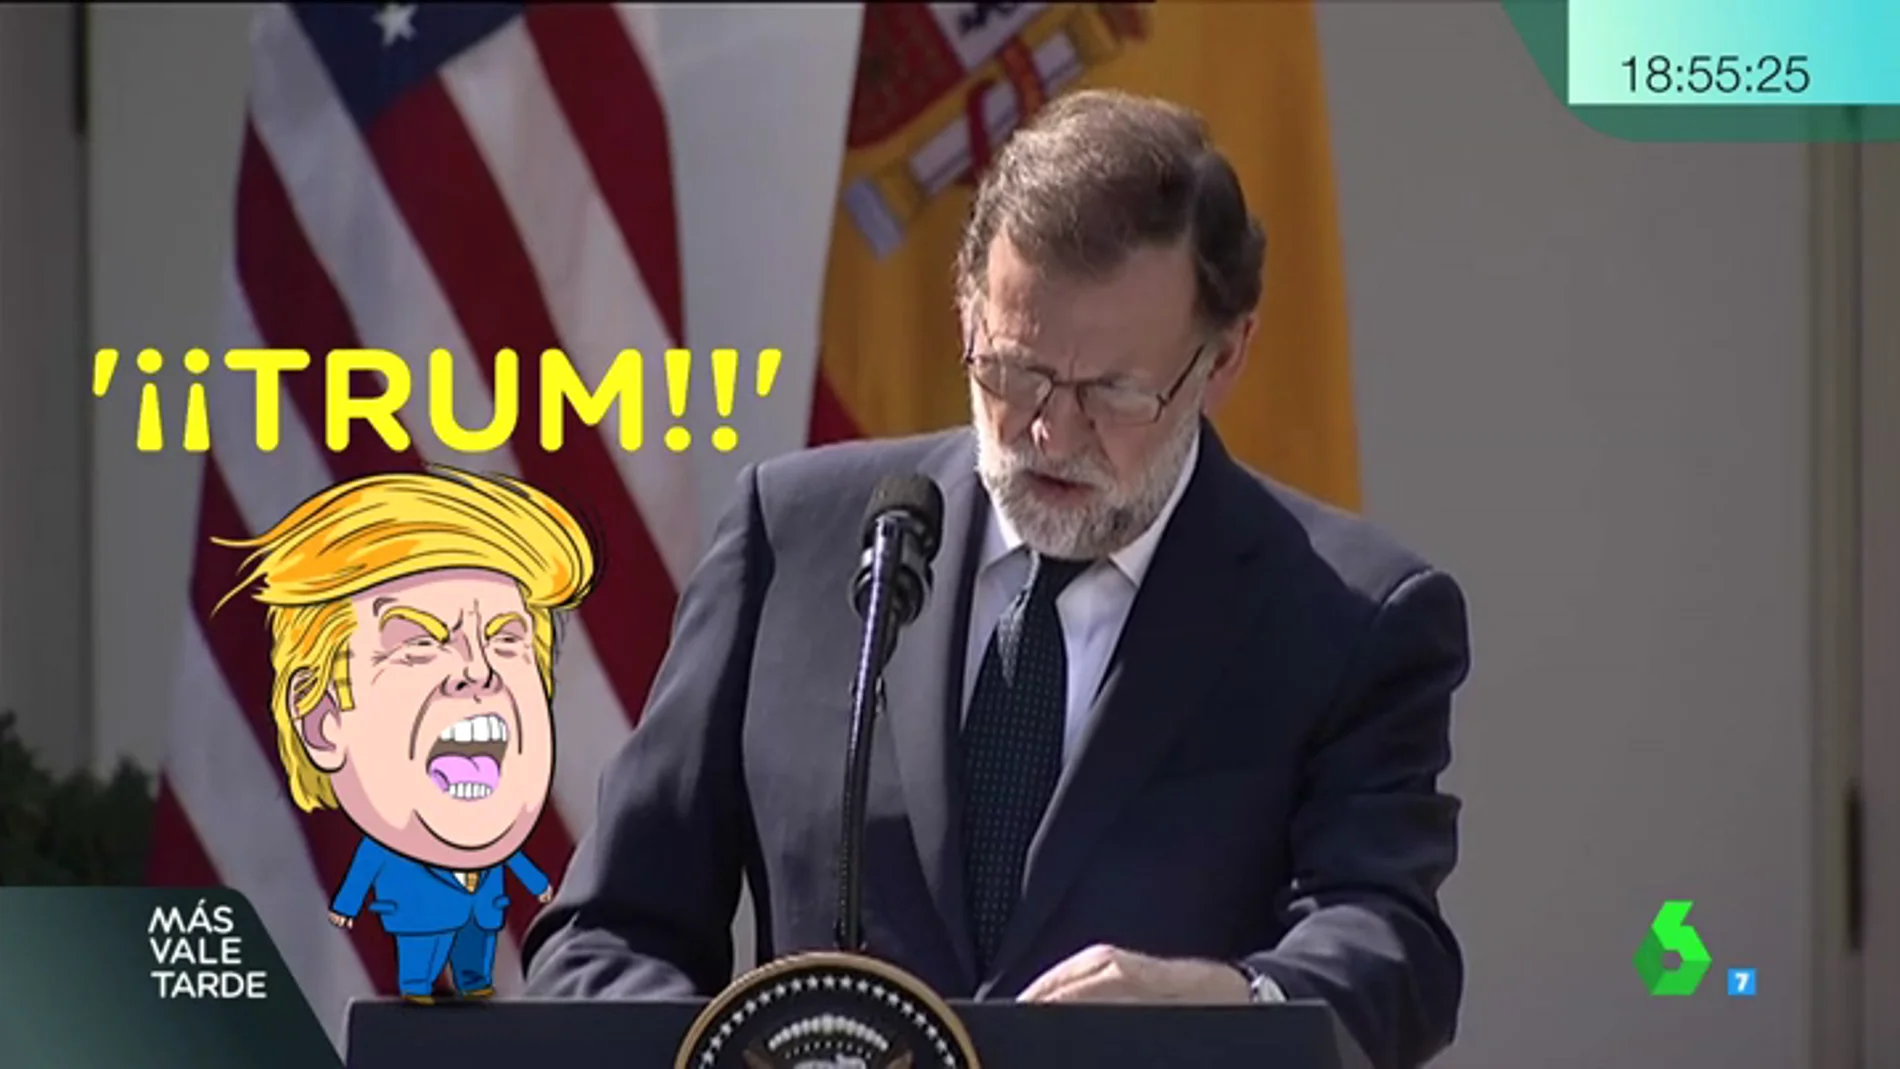  Rajoy no se despega de los lapsus ni en EEUU: llama 'Trun' a Trump y 'Madero' a Maduro